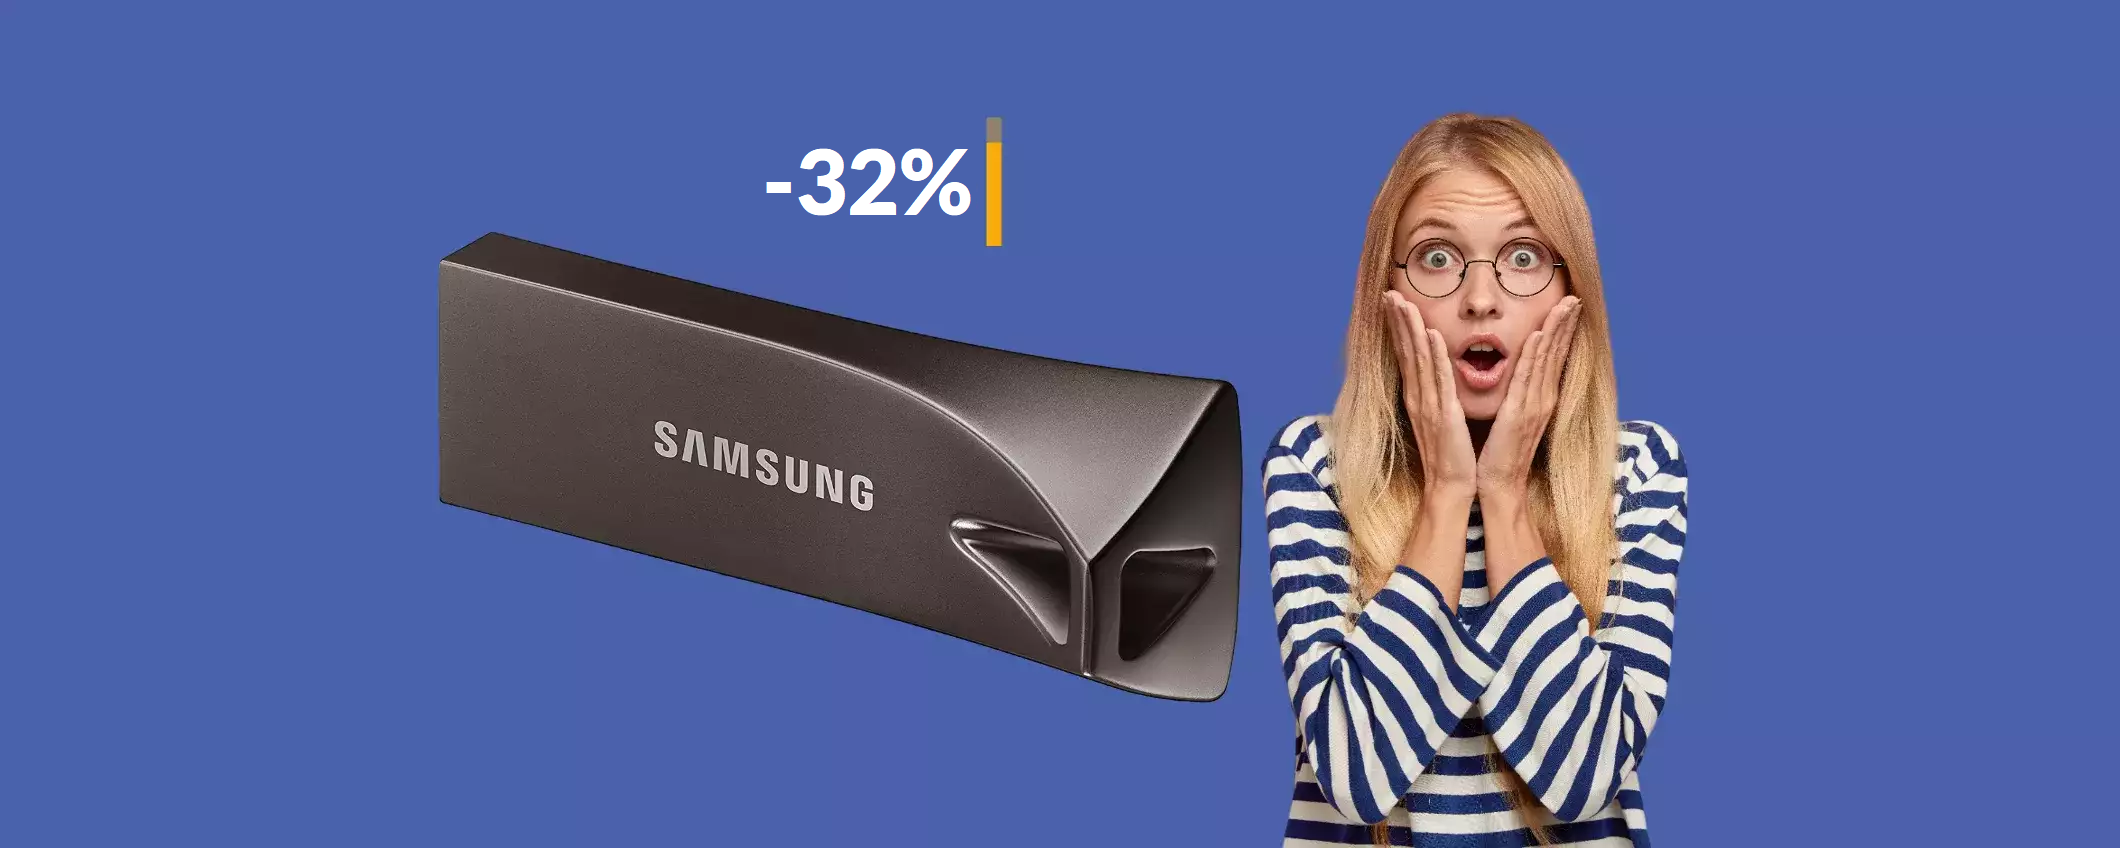 Chiavetta USB 256GB Samsung: bastano 44€ per questa BOMBA